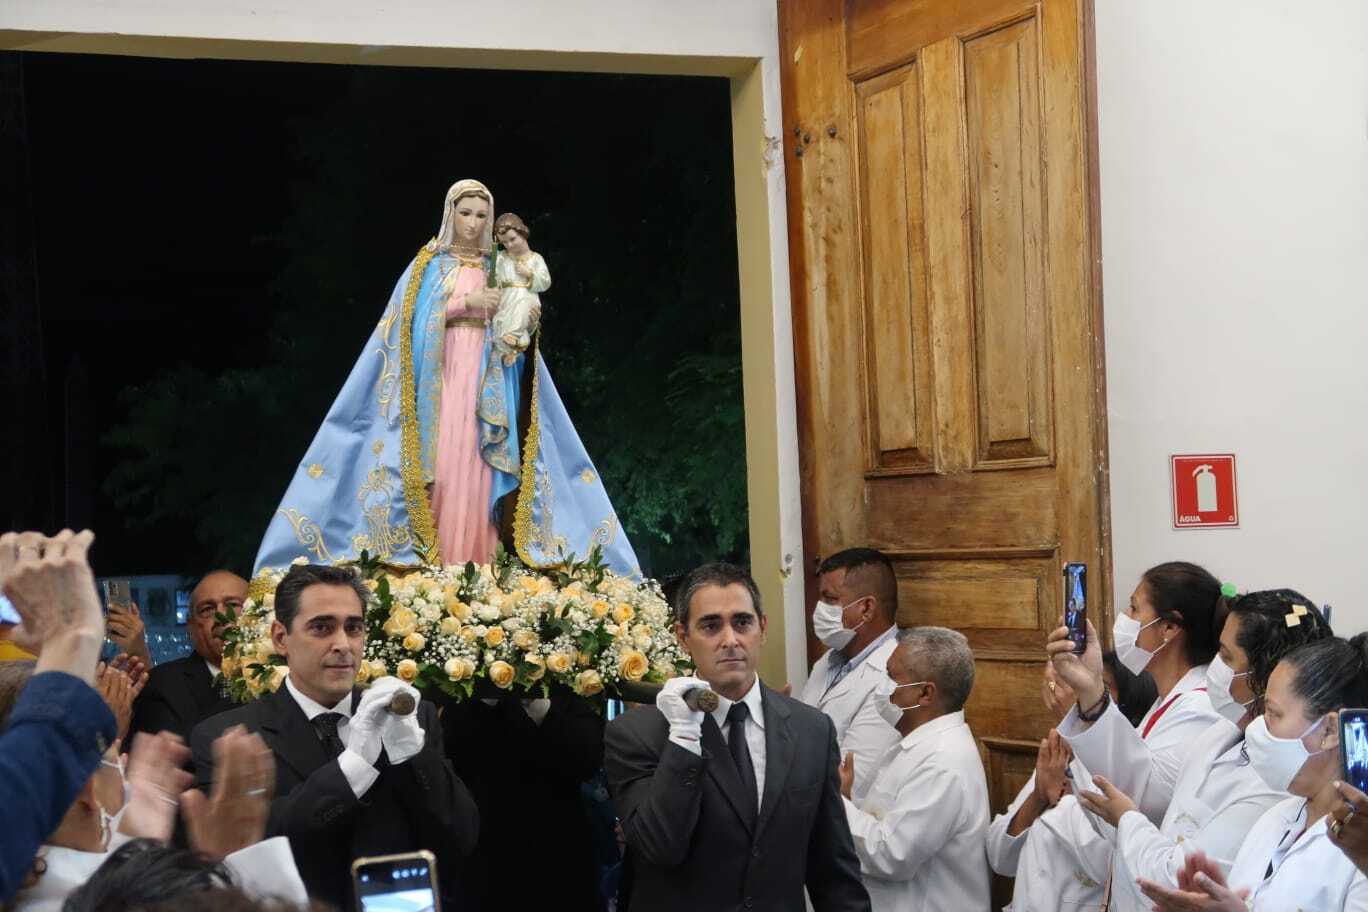 Restaurada, Igreja de Nossa Senhora da Candelária é reinaugurada em Corumbá  - Interior - Campo Grande News